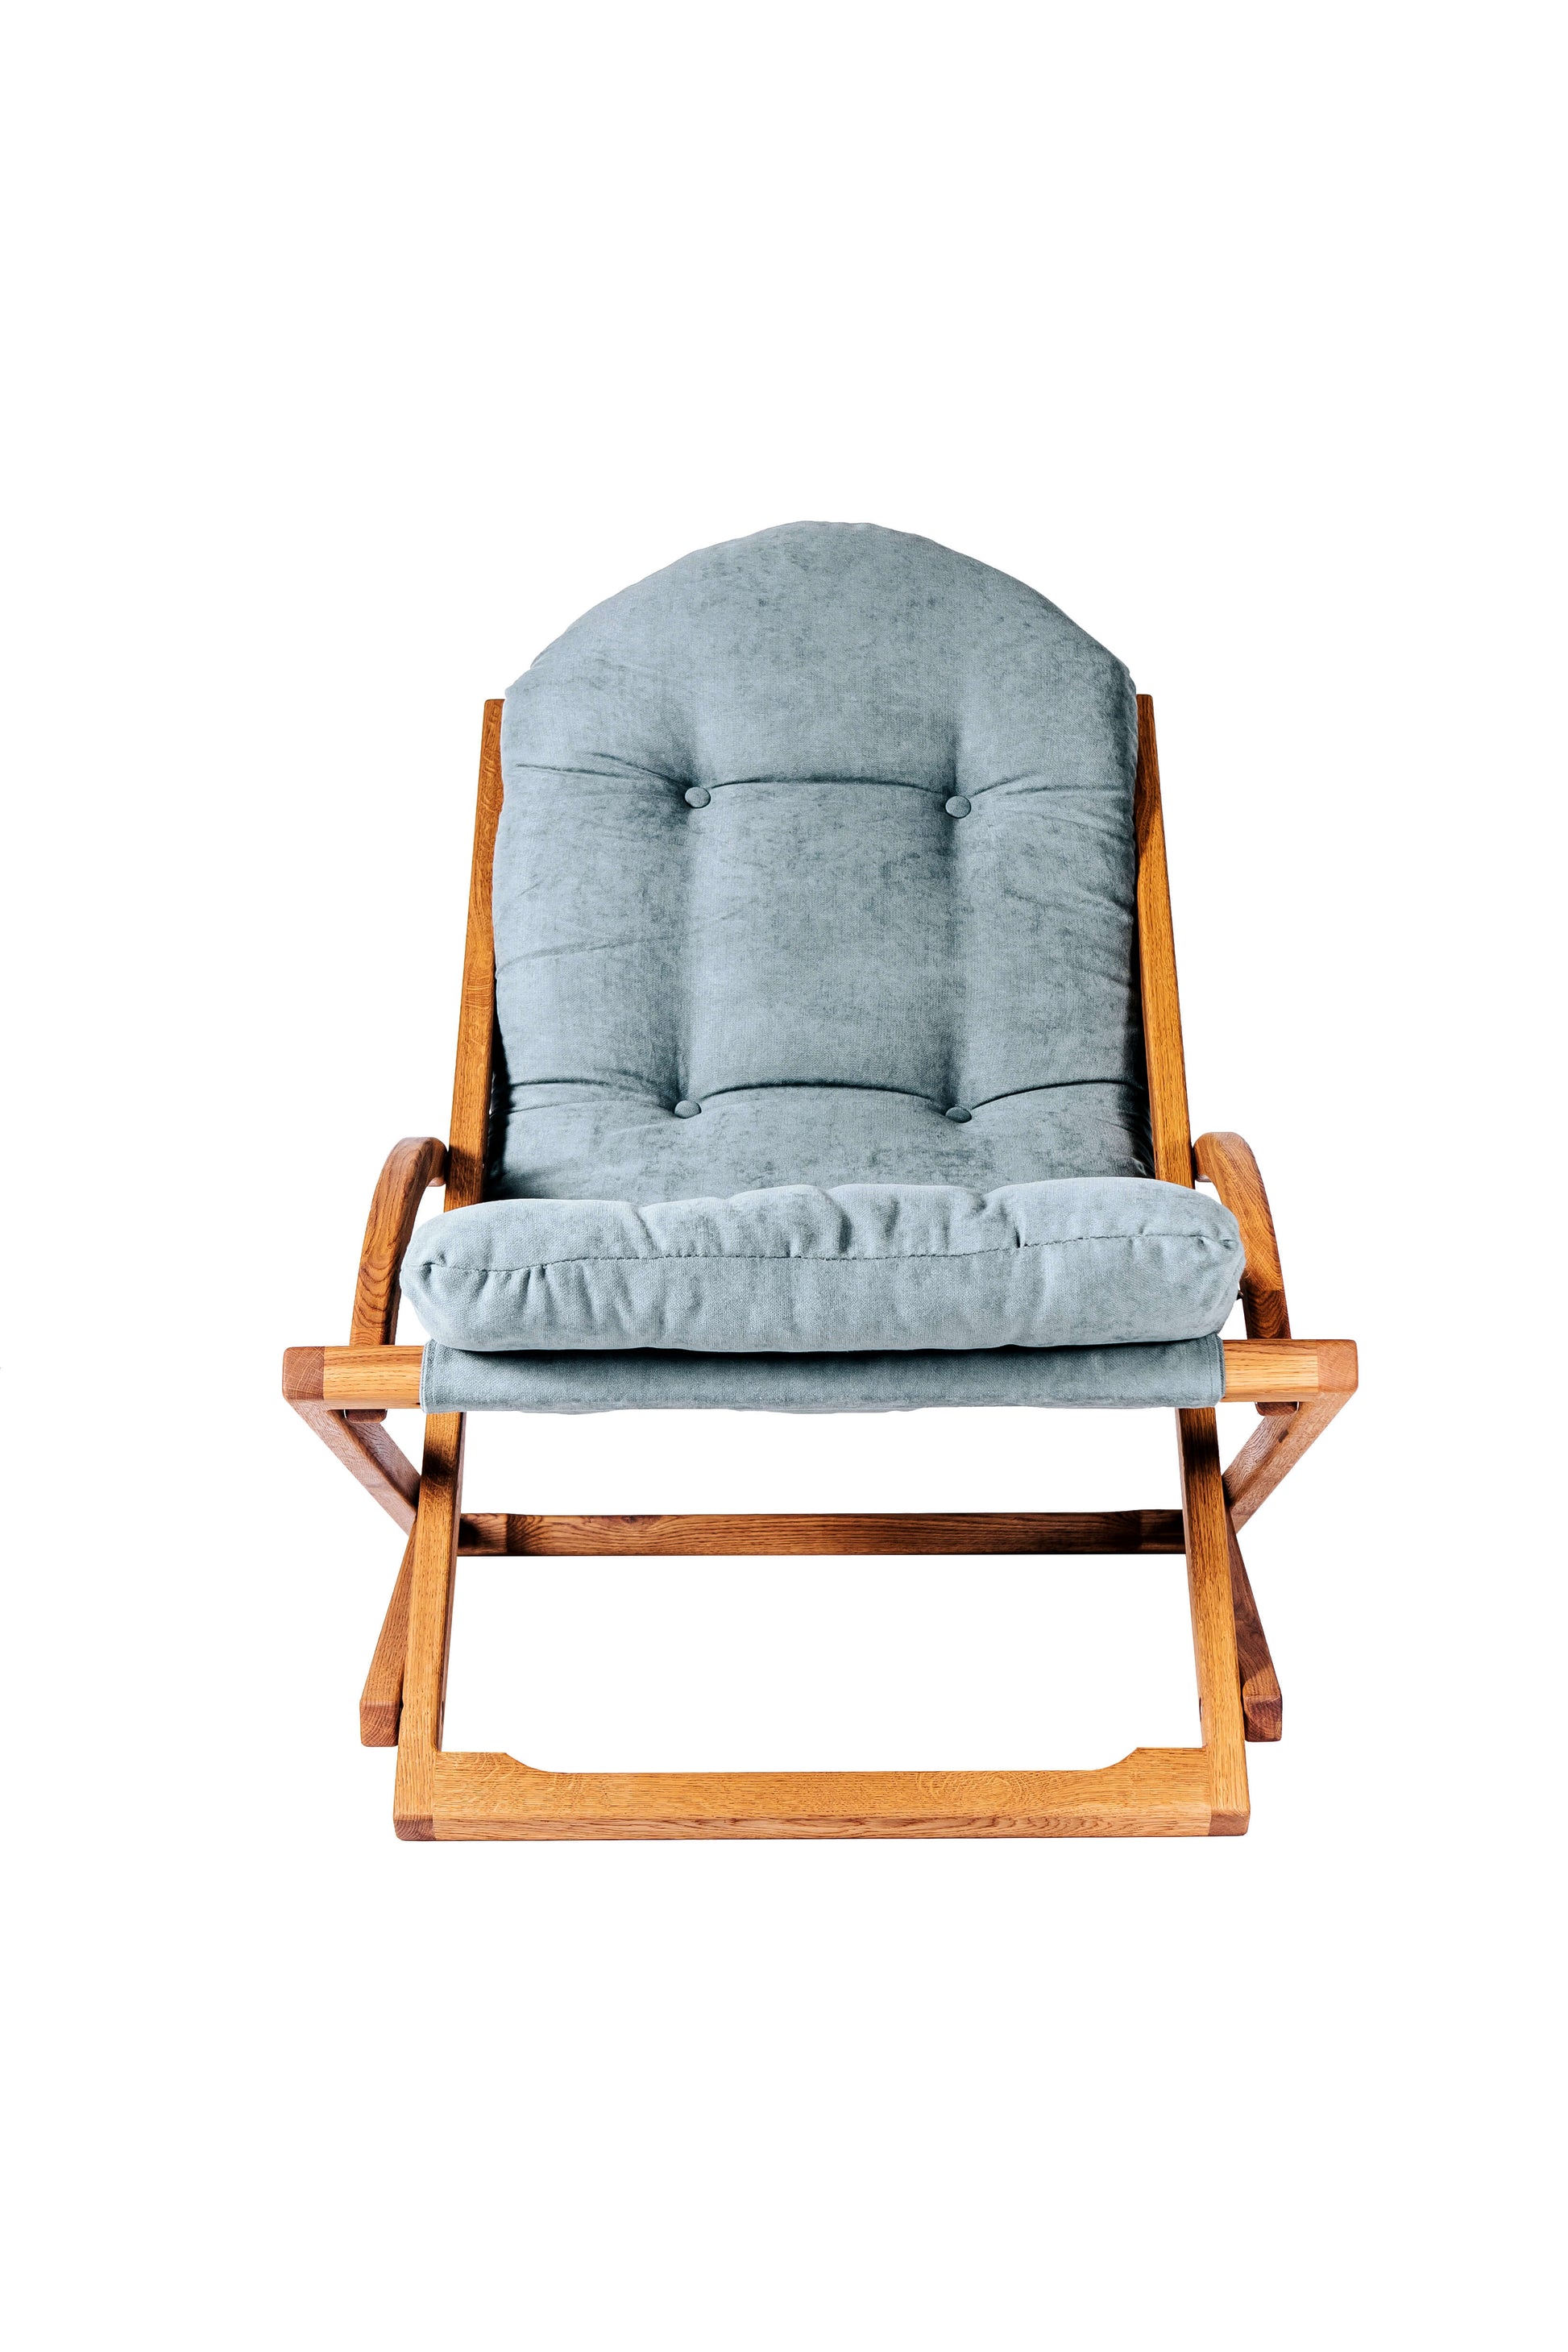 oak chase lounge chair set